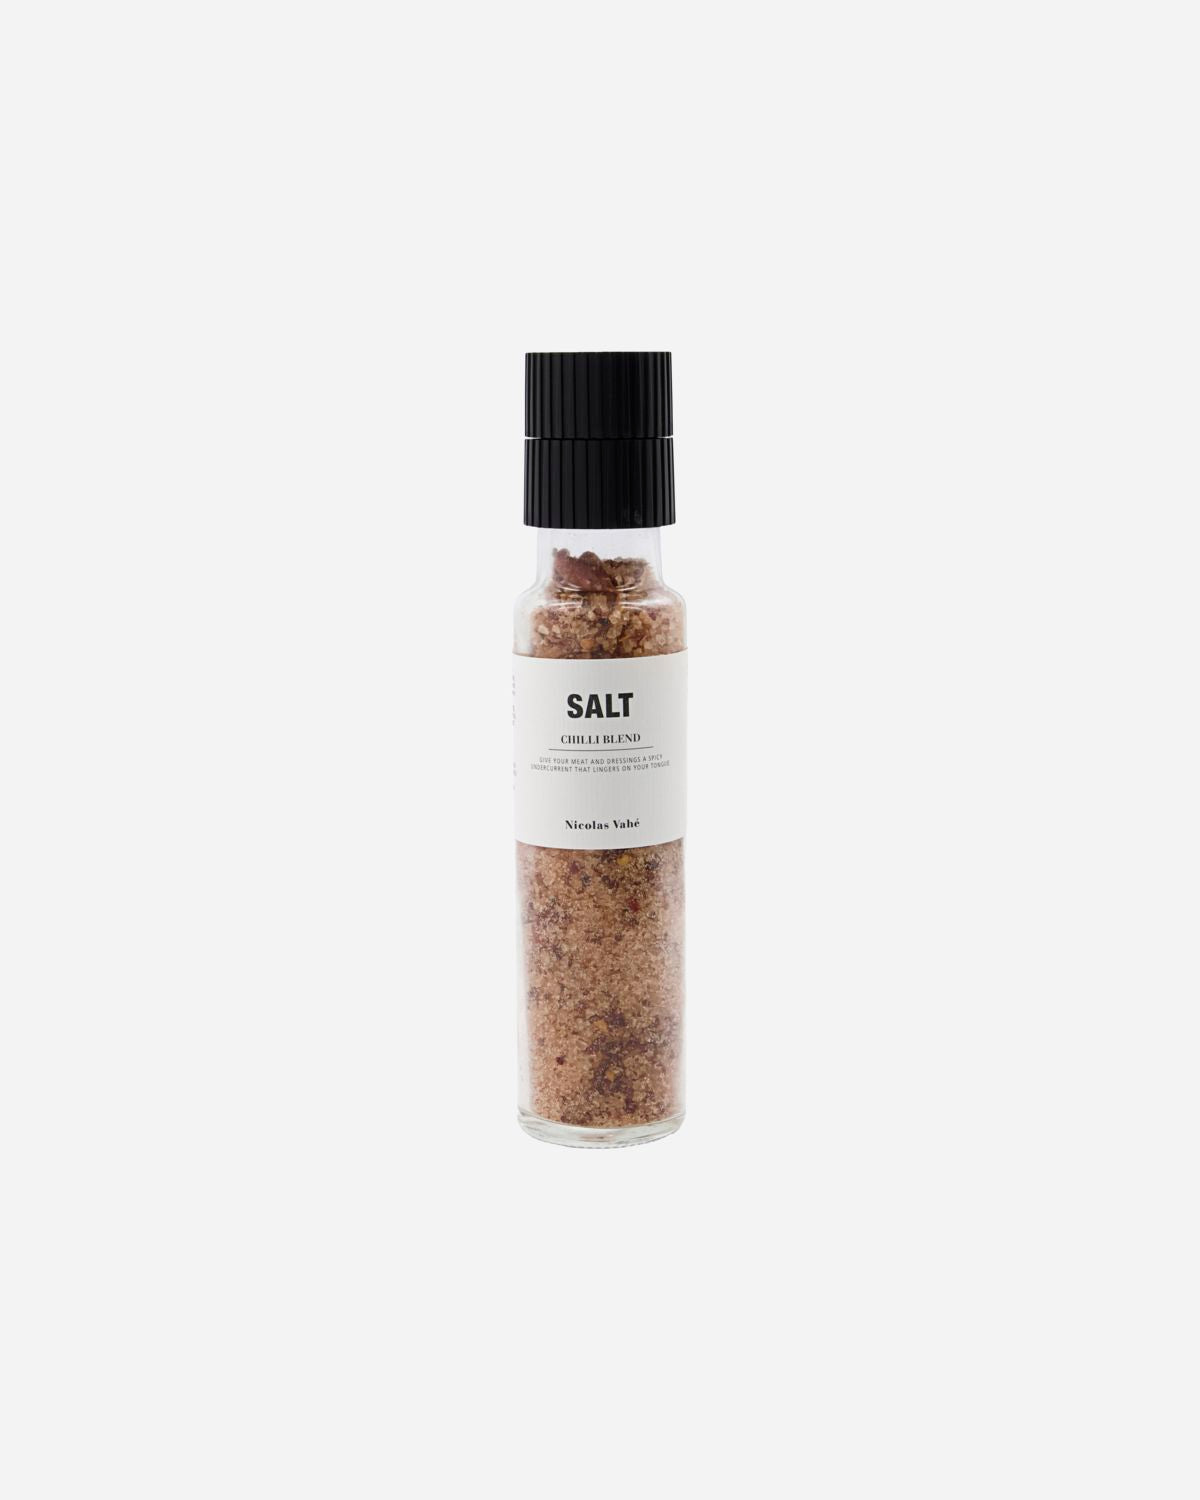 Salt, Chilli blend Café Society